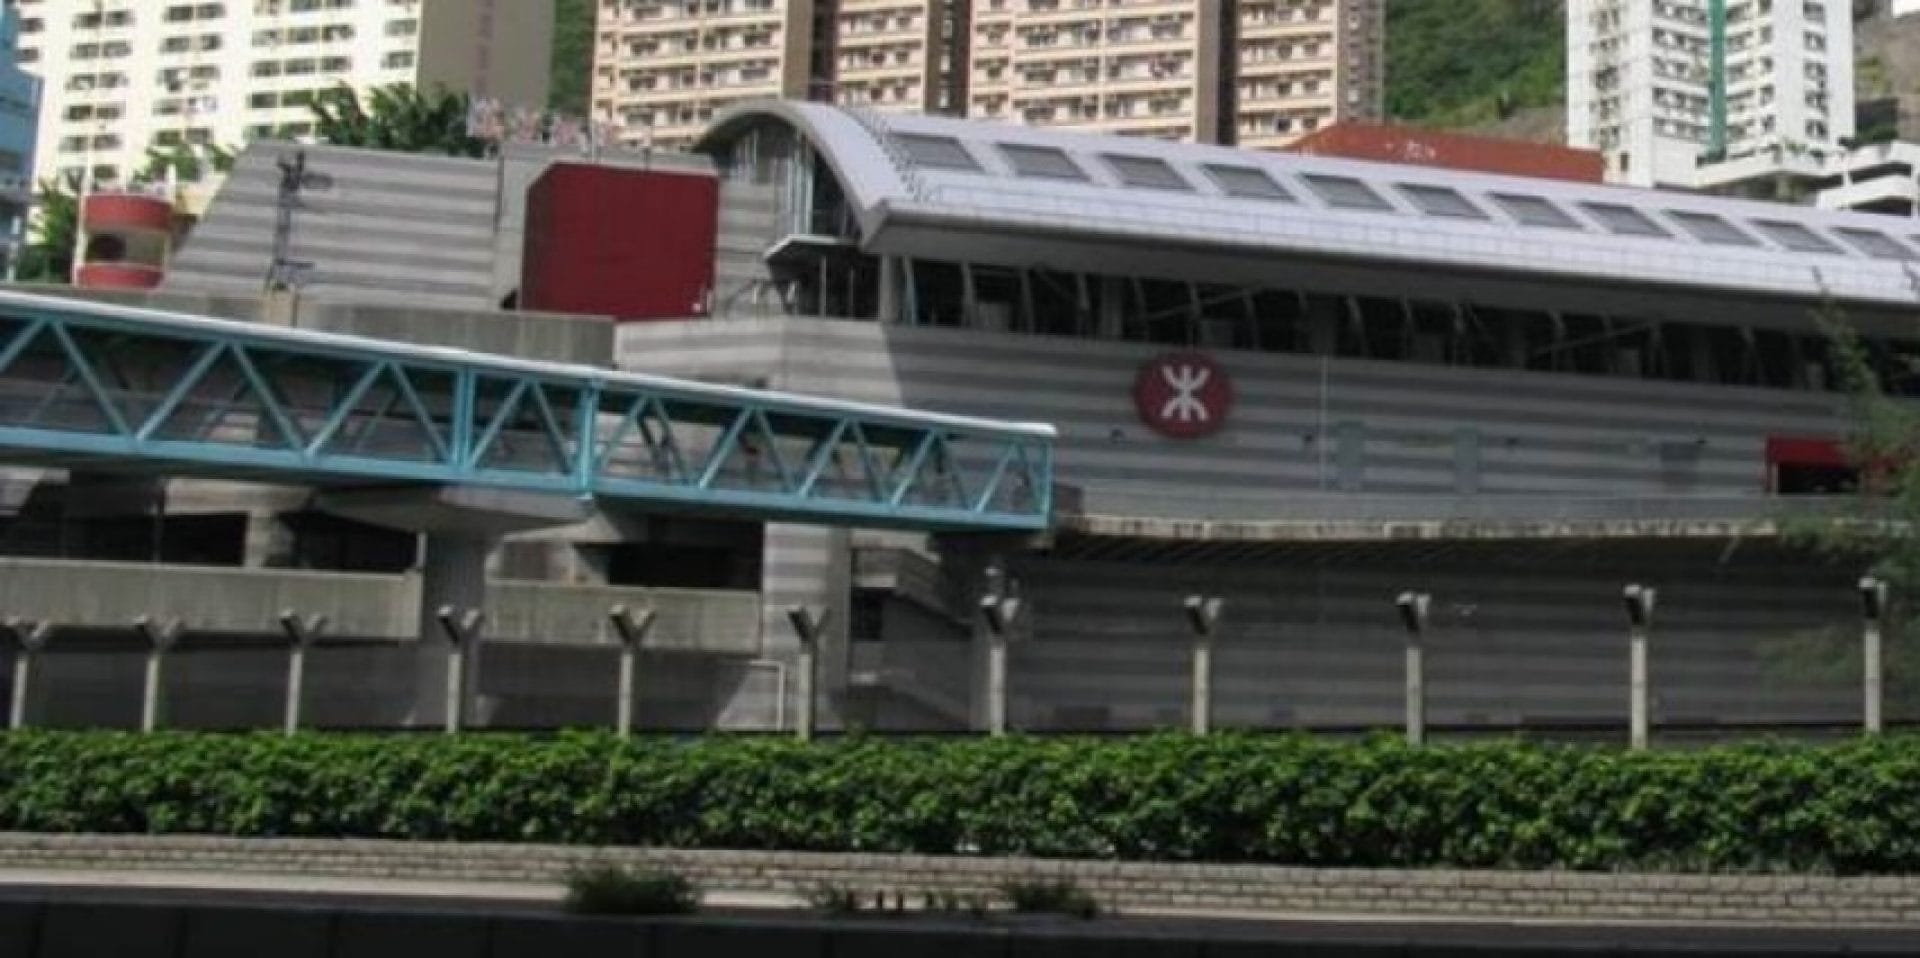  LAI KING MTR METRO STATION - HONG KONG